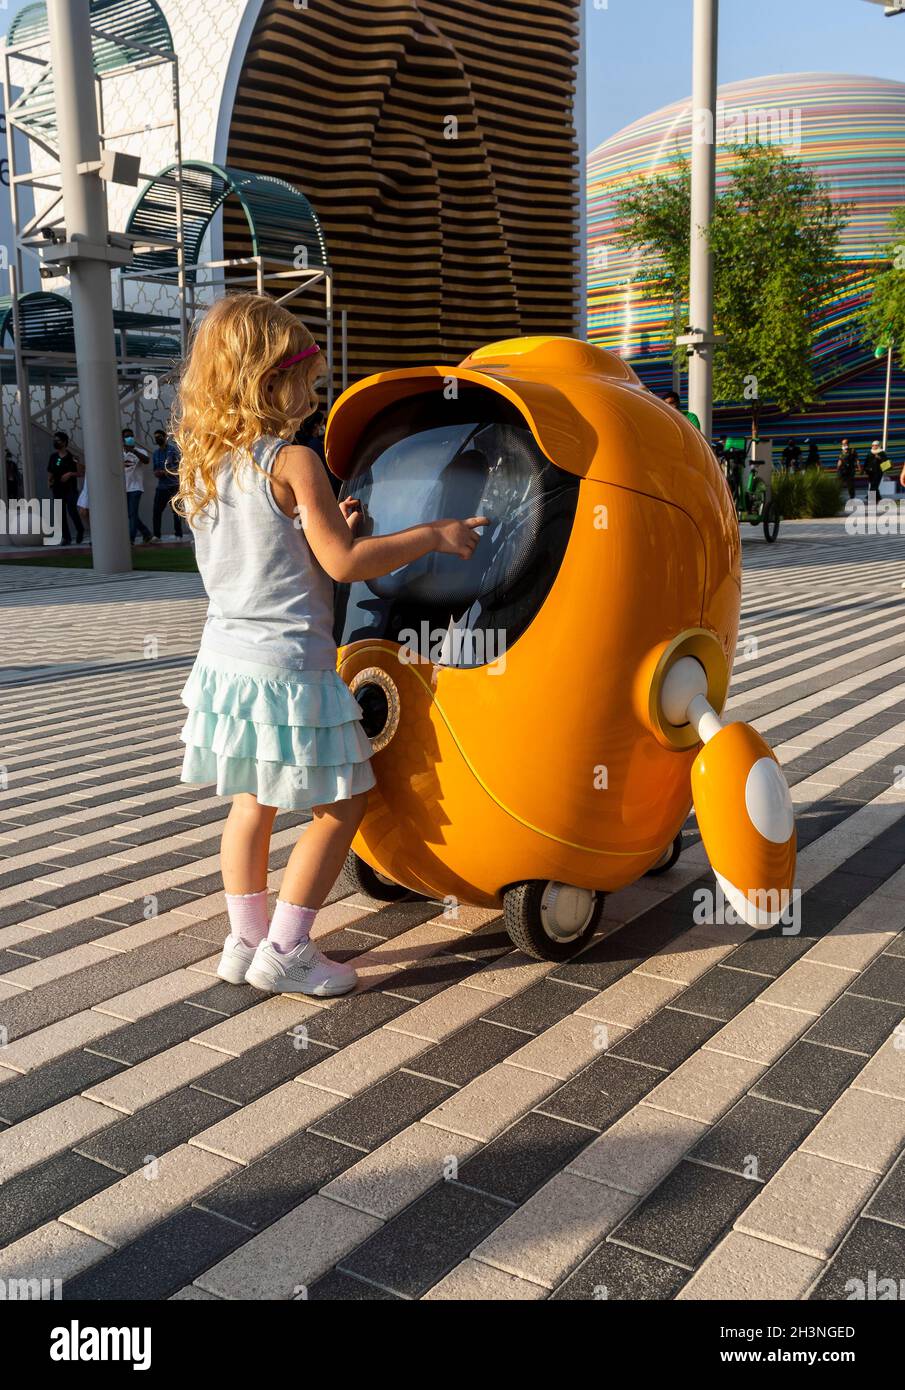 Dubai, VAE - 10.16.2021 Aufnahme eines kleinen Mädchens, das mit einem niedlichen kleinen Roboter an der EXPO 2020 spielt. Stockfoto